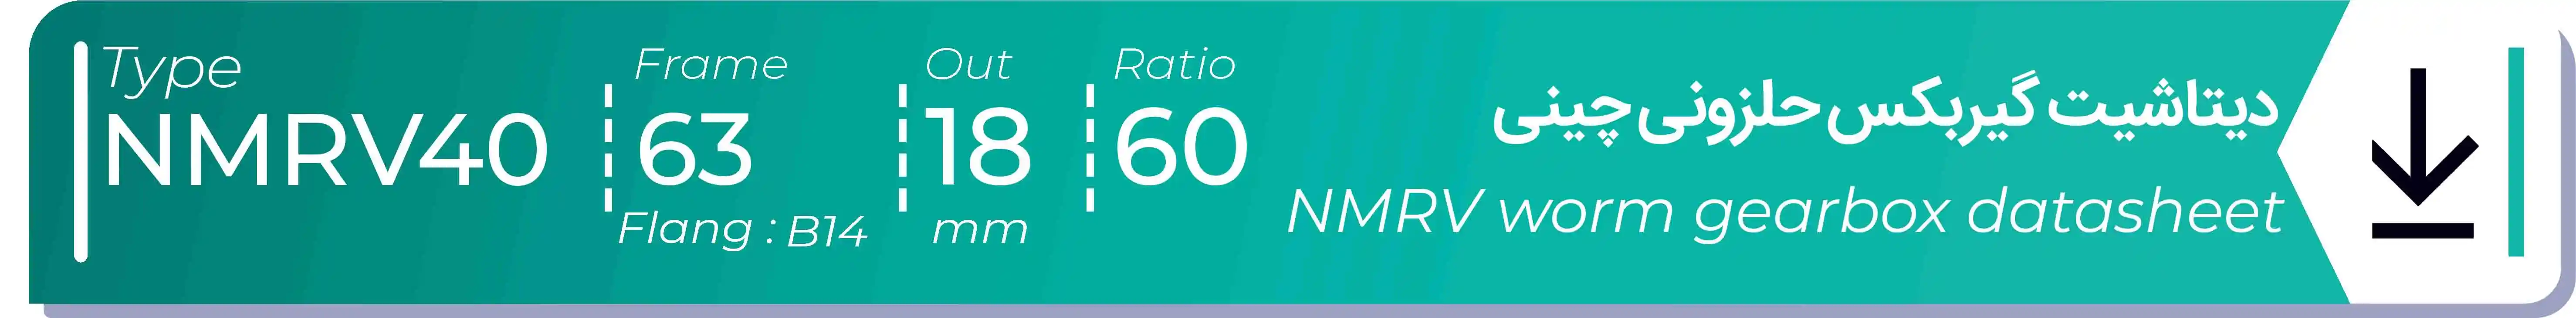  دیتاشیت و مشخصات فنی گیربکس حلزونی چینی   NMRV40  -  با خروجی 18- میلی متر و نسبت60 و فریم 63